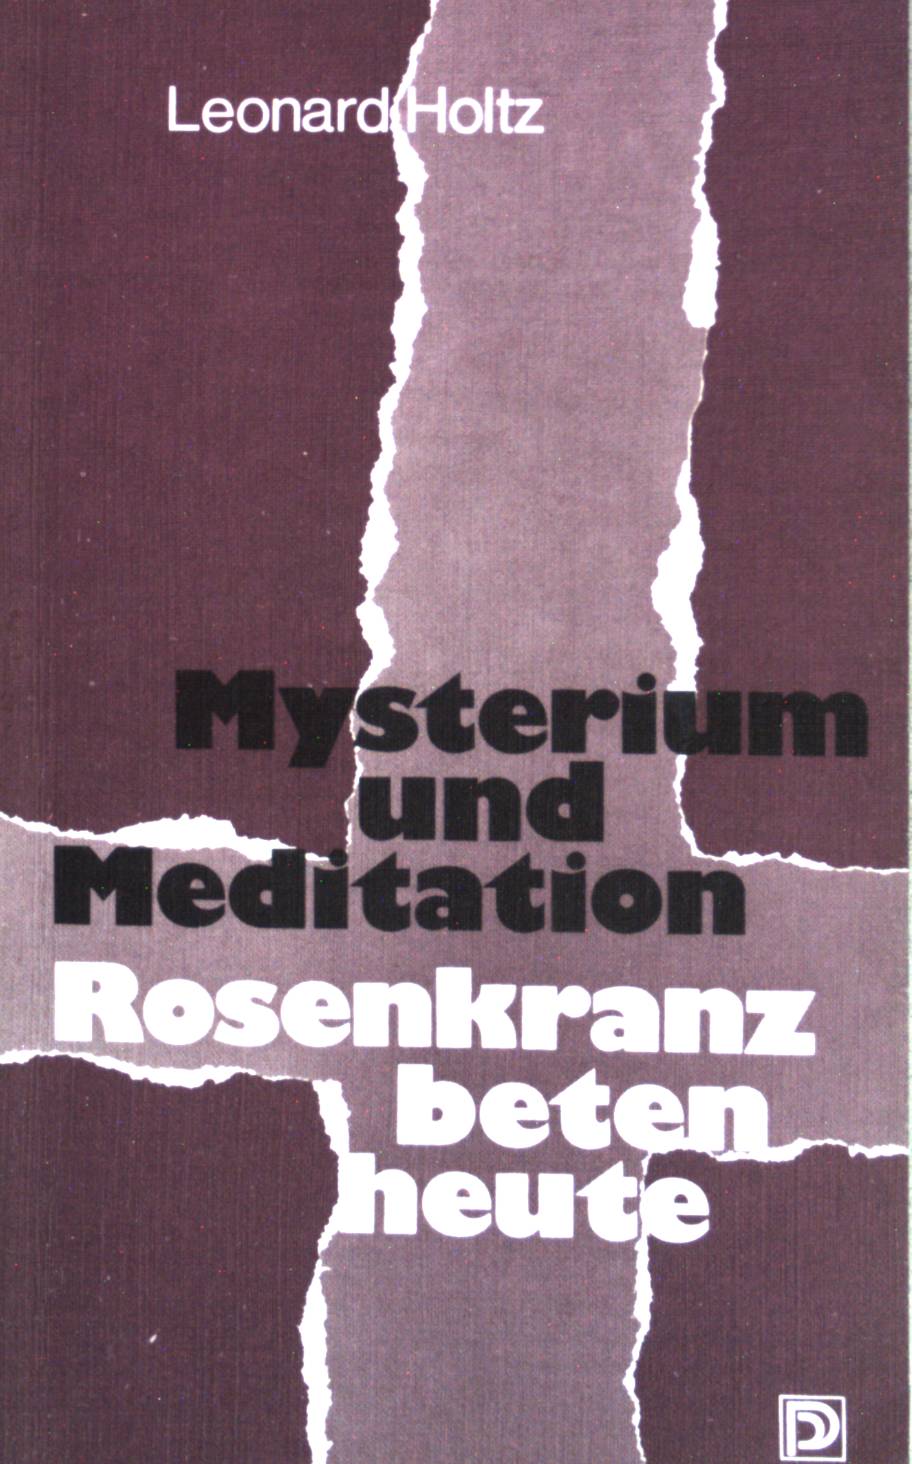 Mysterium und Meditation : Rosenkranzbeten heute. - Holtz, Leonard